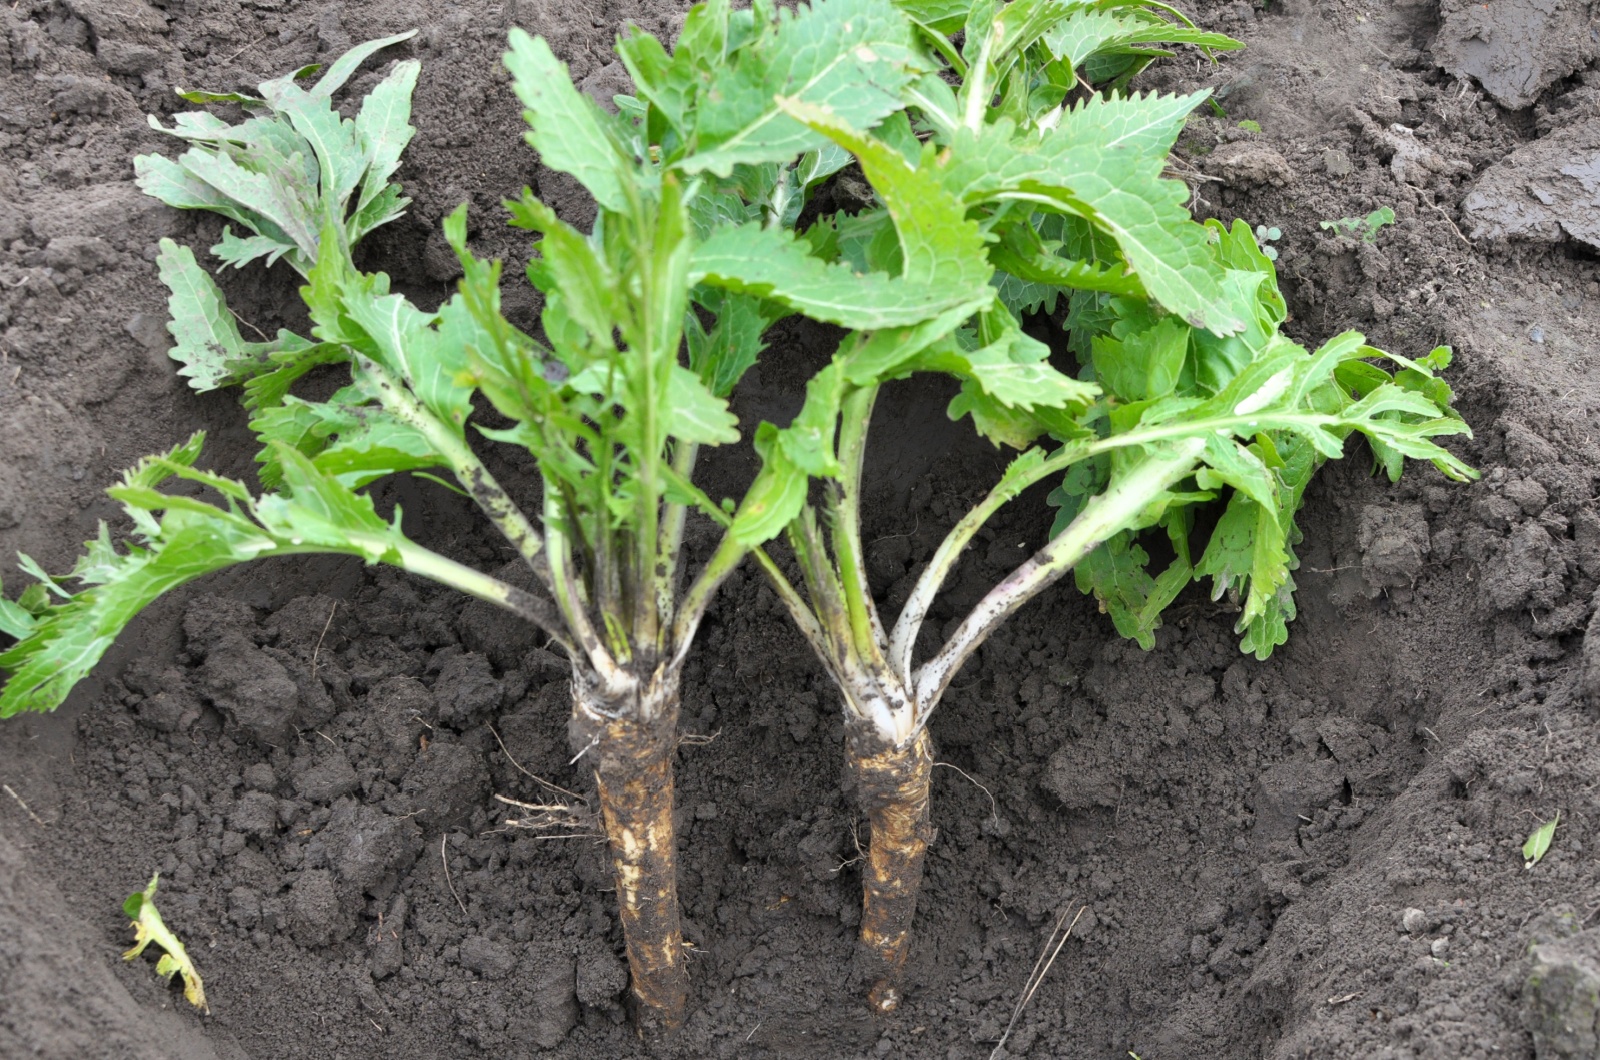 Digging horseradish root